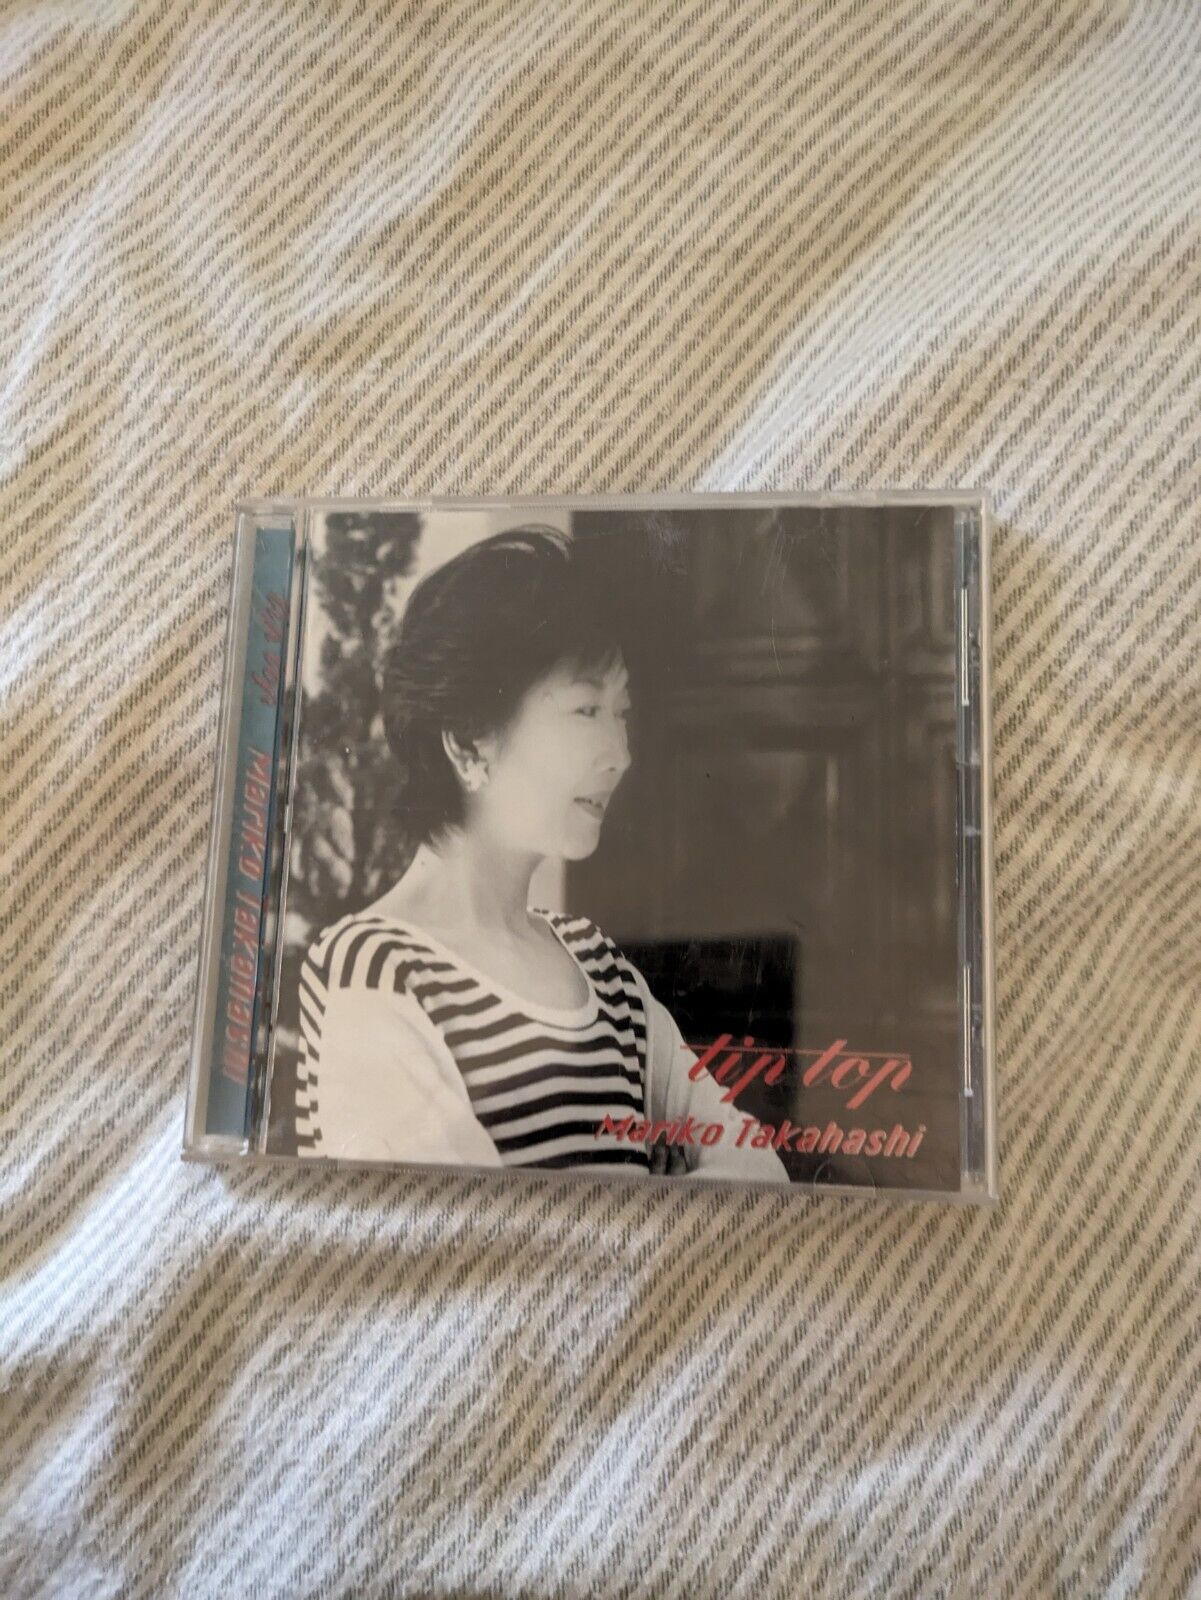 Mariko Takahashi CD Tip Top Japan Import J-pop Jpop City Pop Japanese Vintage